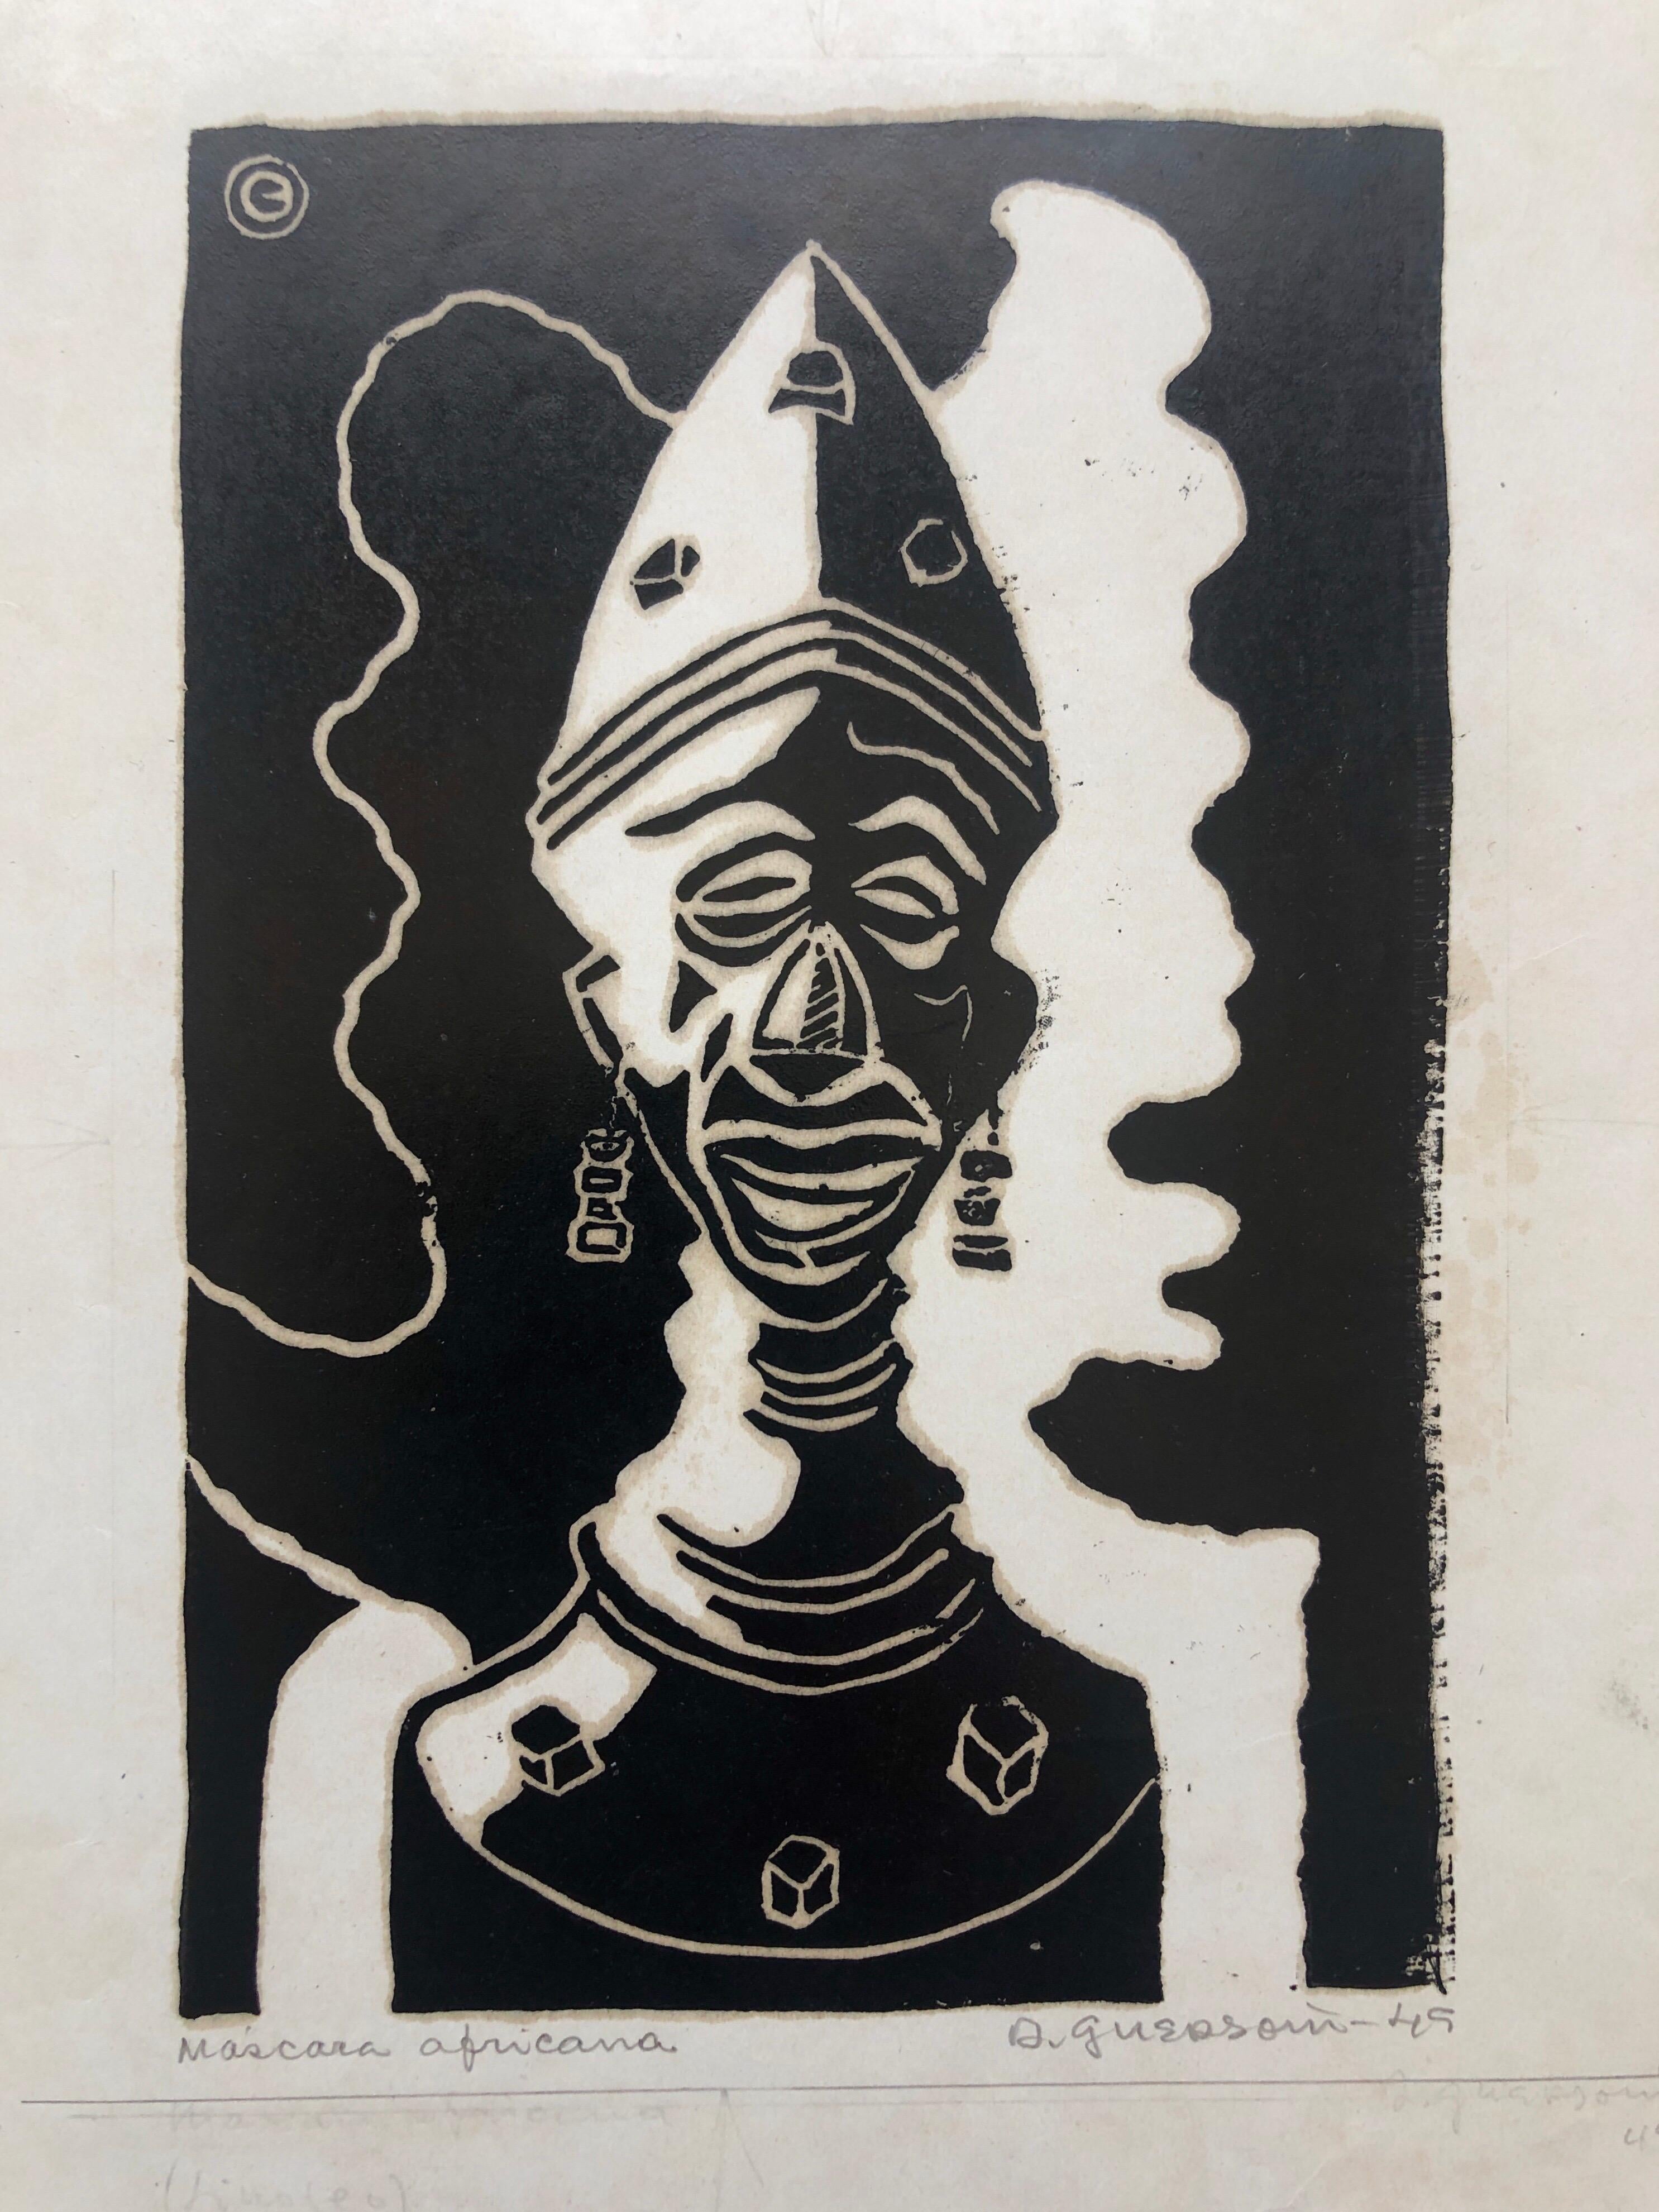 Odetto Guersoni Nude Print – 1945 Brasilianischer Meister, Art Deco Clown Serigraphie Holzschnitt 